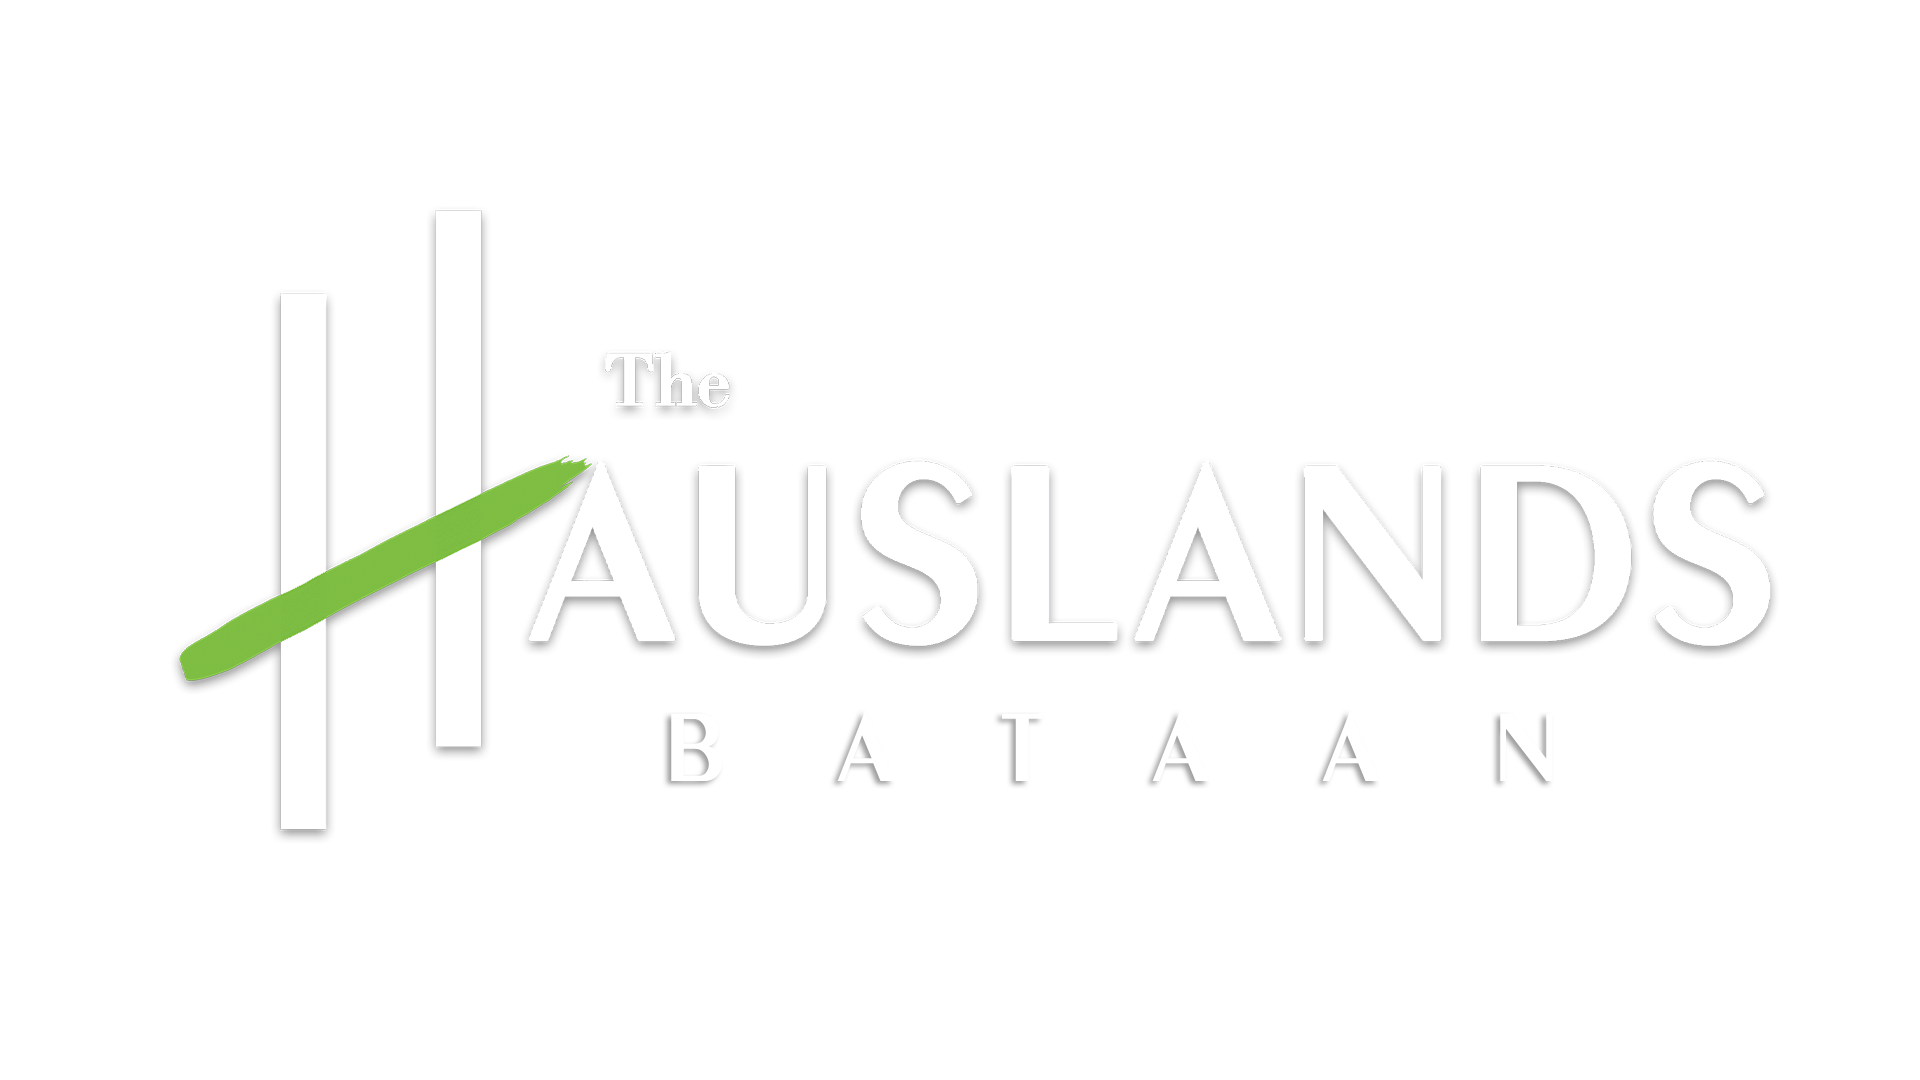 The Hauslands Bataan